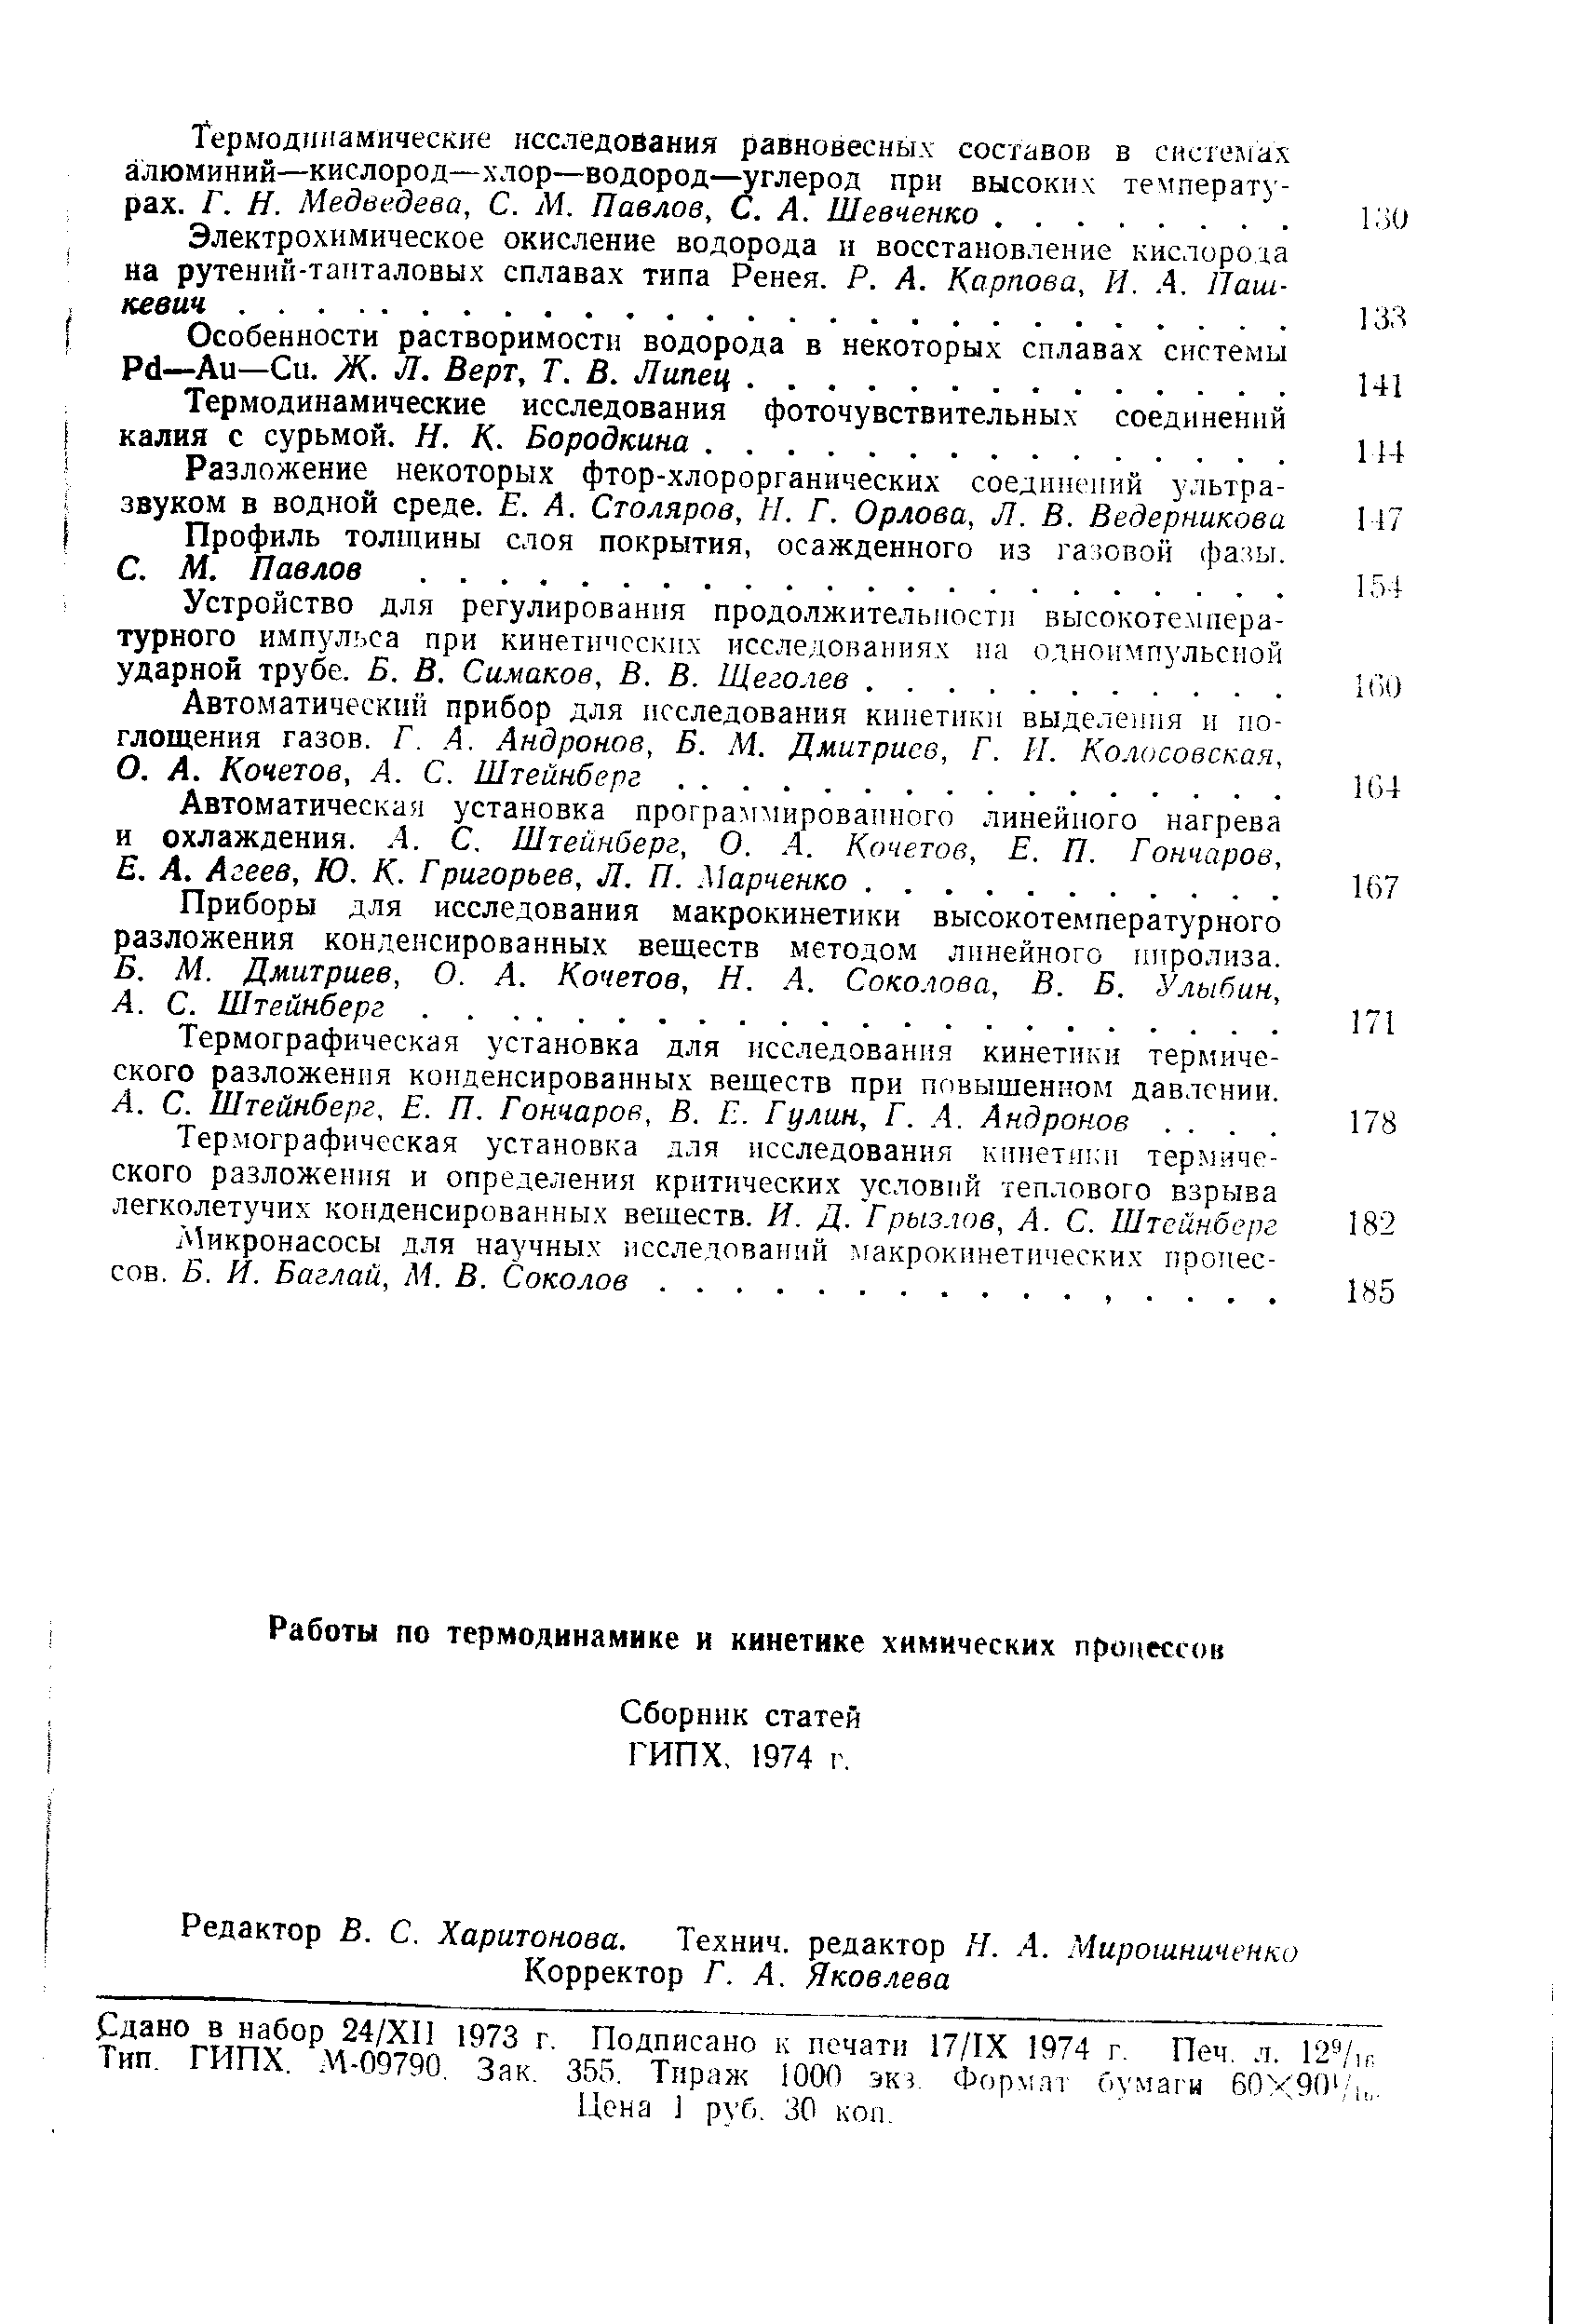 Сборник статей ГИПХ, 1974 г.